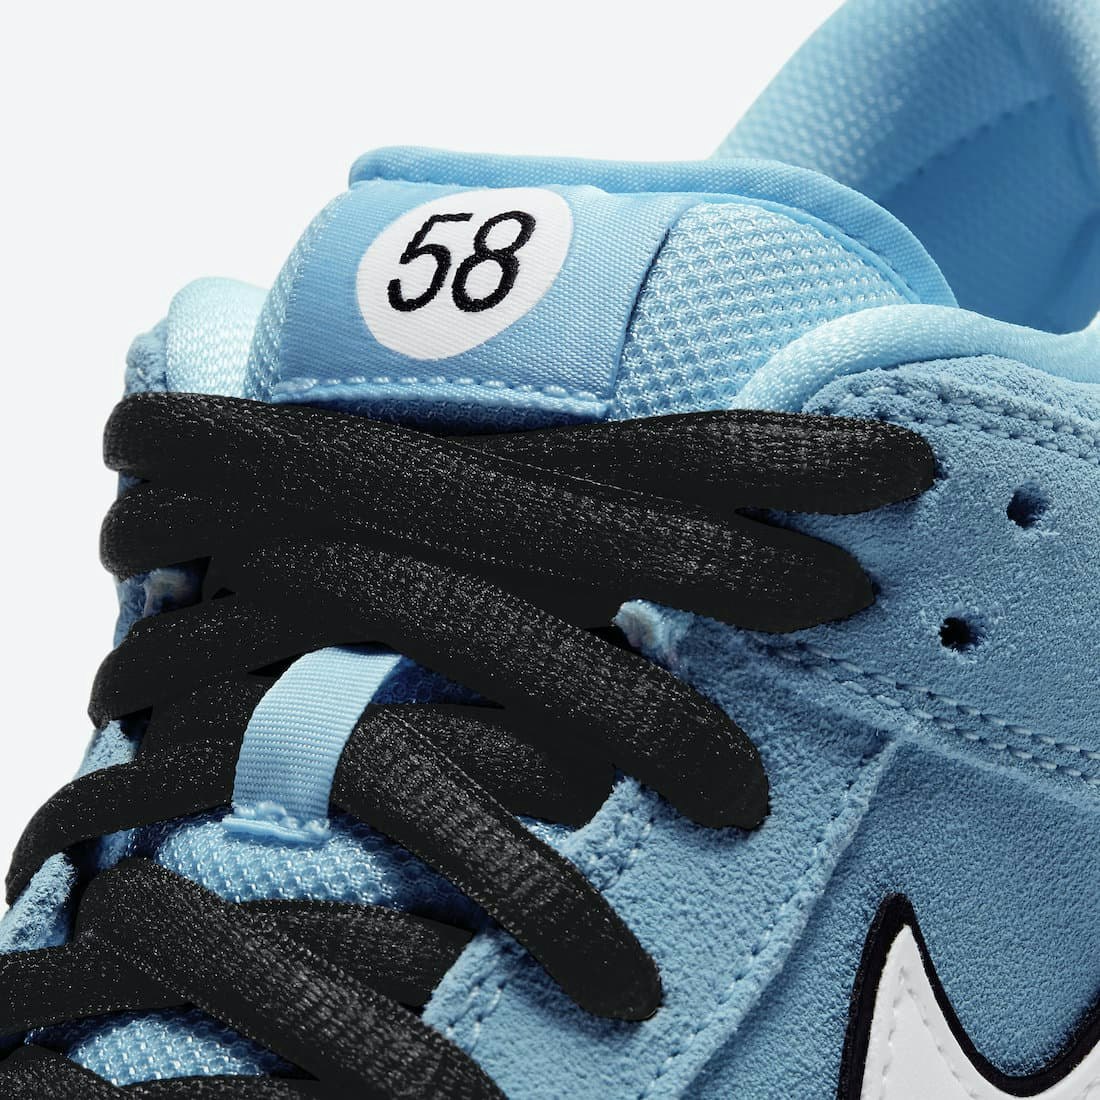 Nike SB Dunk Low Pro "58 Gulf"